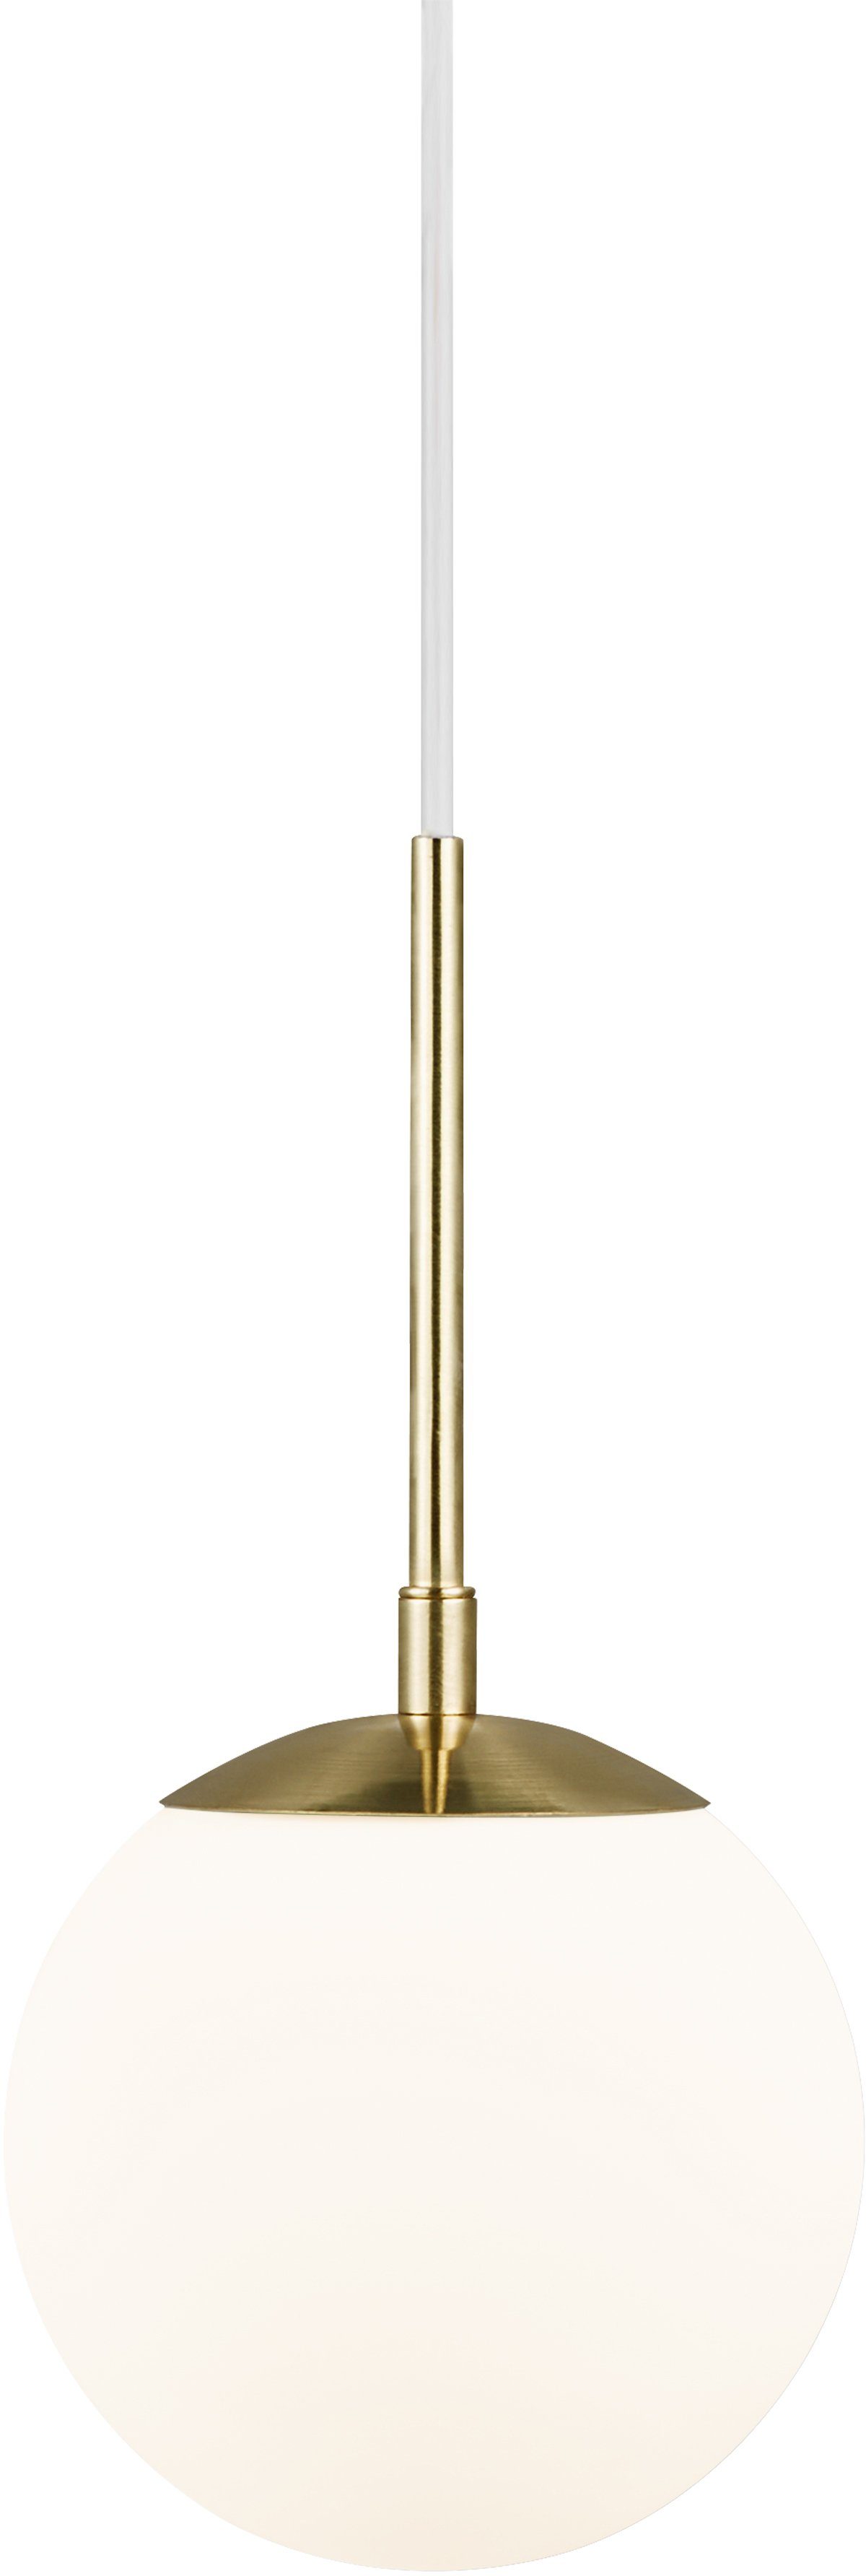 nordlux hanglamp grant hanglamp, met de mond geblazen glas, messing stijl goud